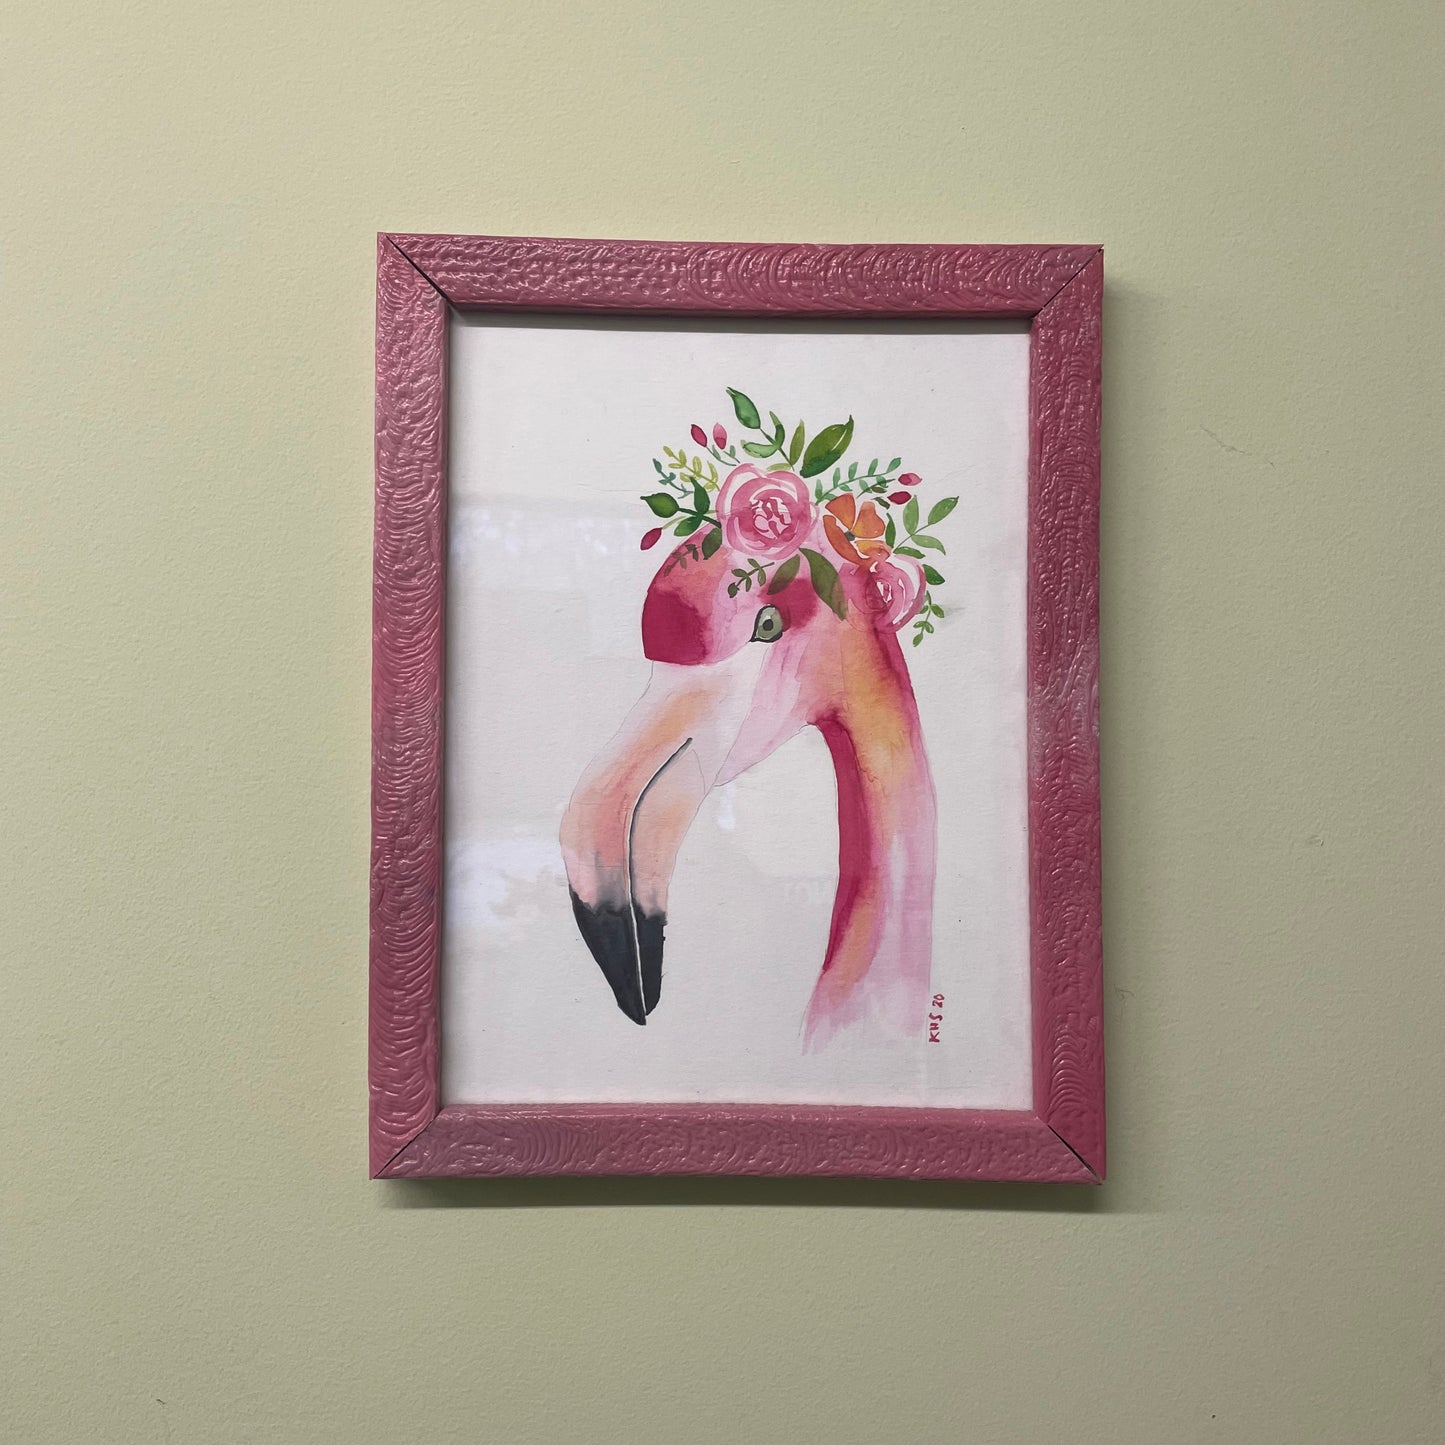 A Pink Flamingo Portrait